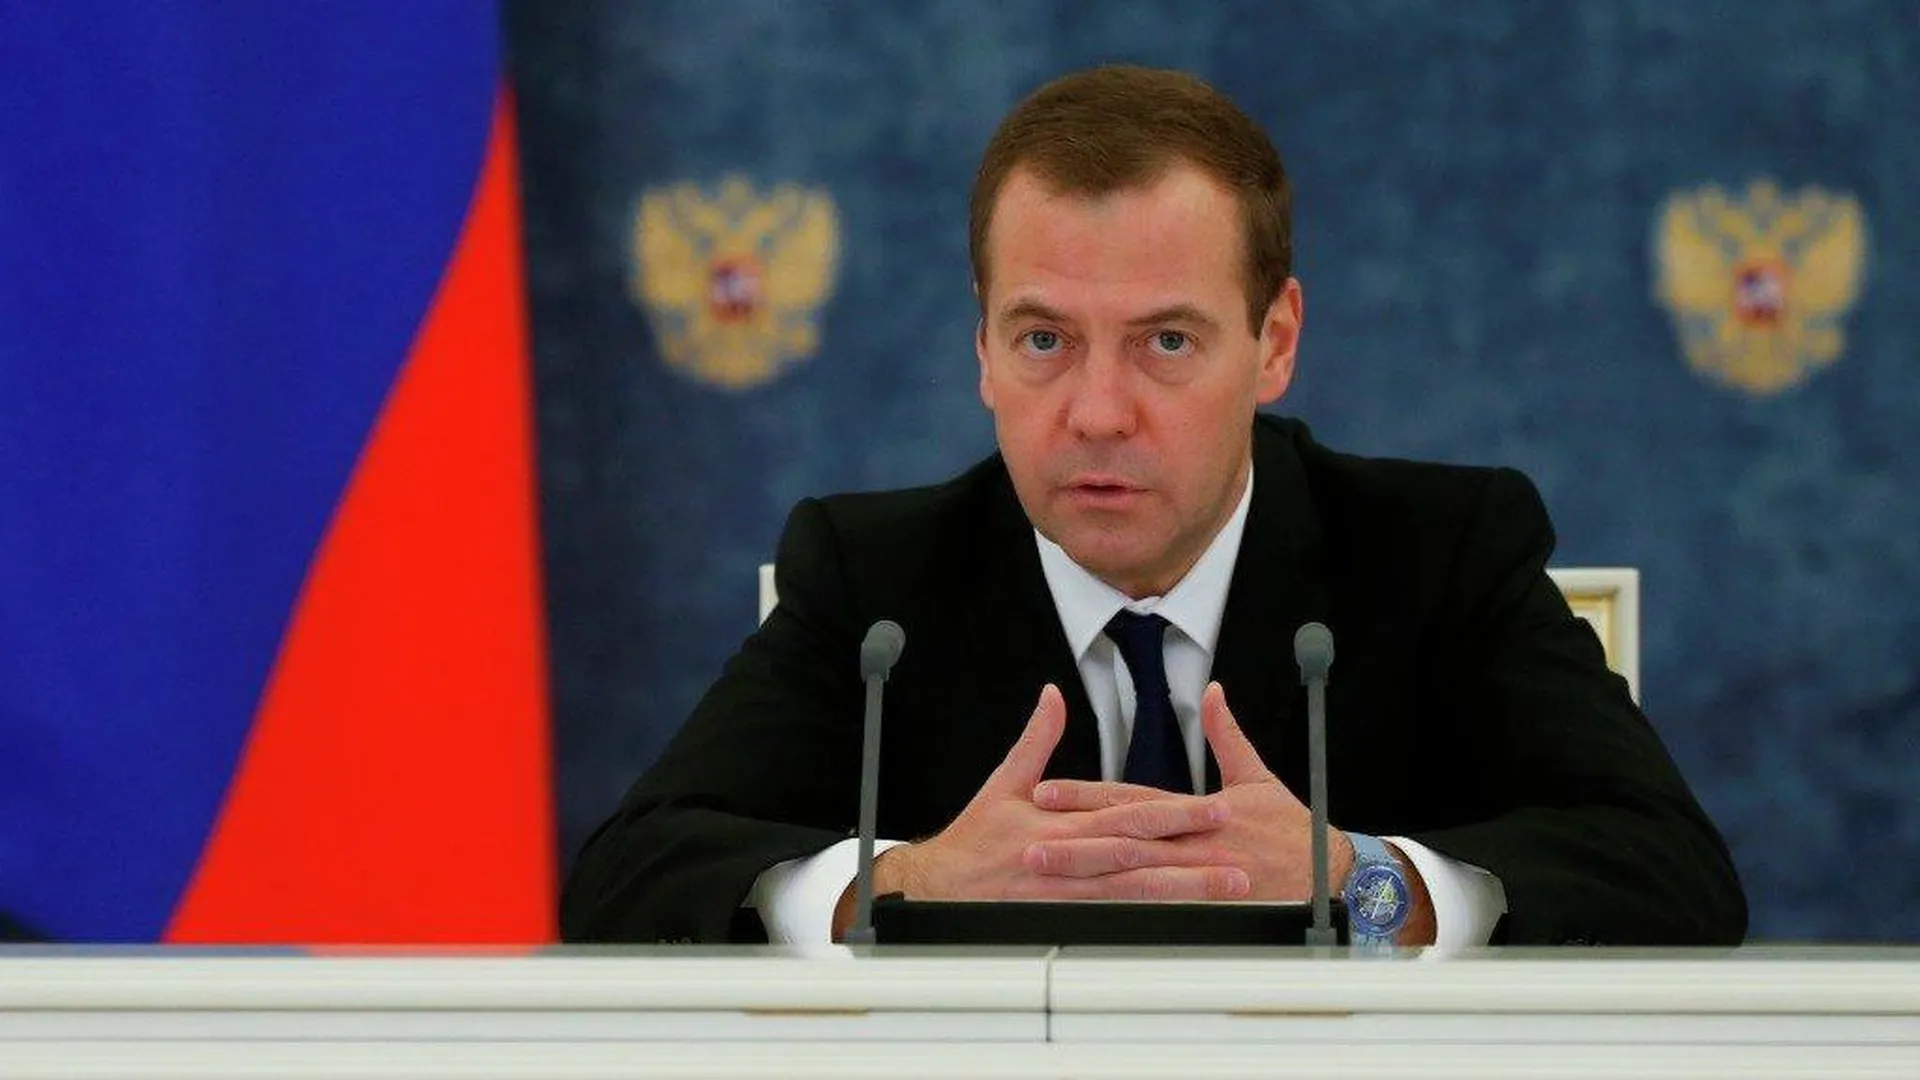 Расходы на госаппарат сократят в РФ на 10% в 2016 году — Медведев